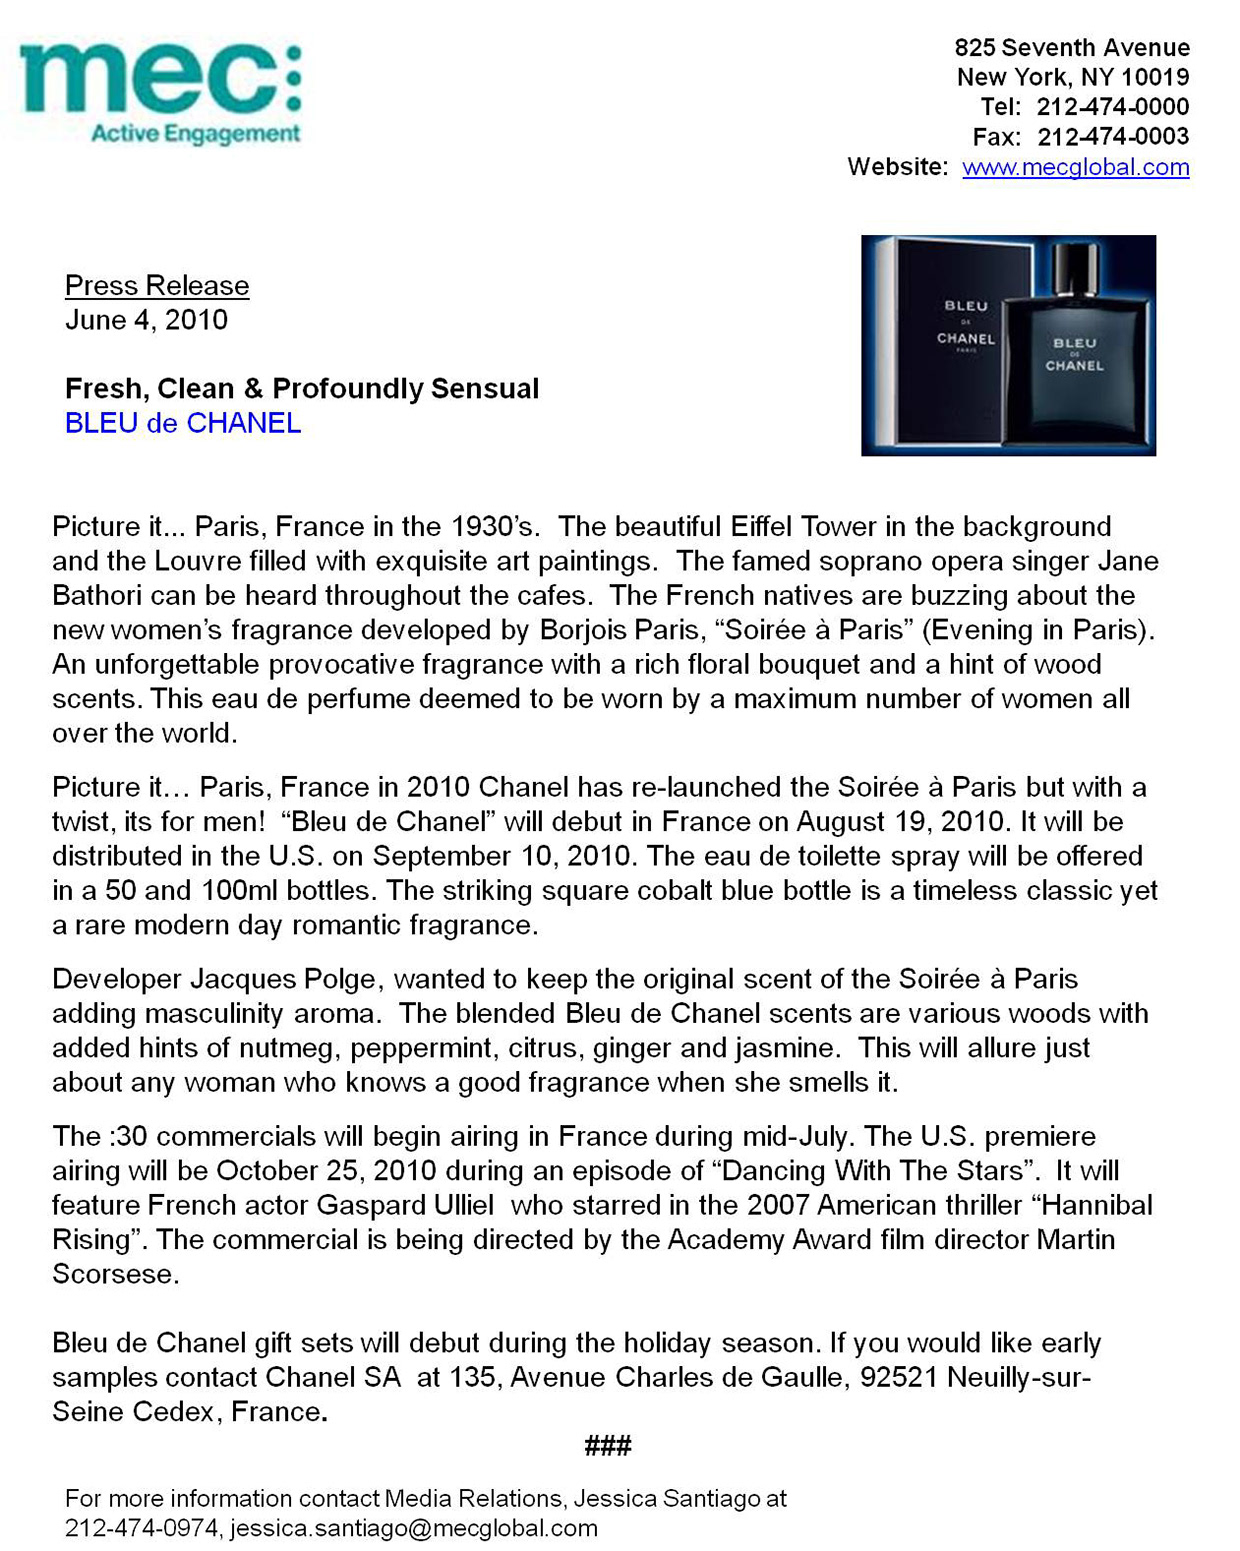 Chanel Press Release on Behance